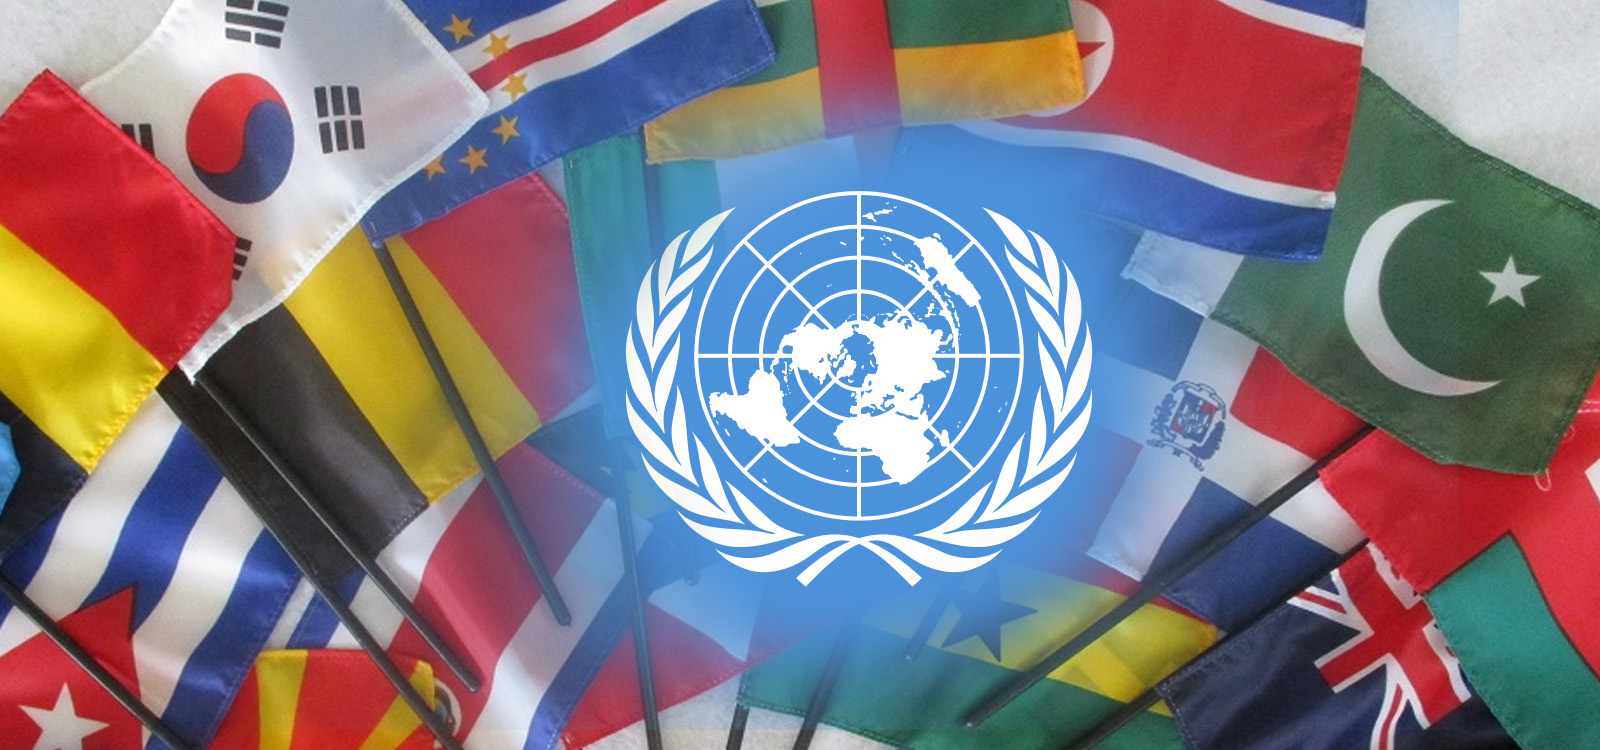 Страны участницы оон. Международные организации ООН. Флаги государств входящих в ООН. 193 Государства в ООН.